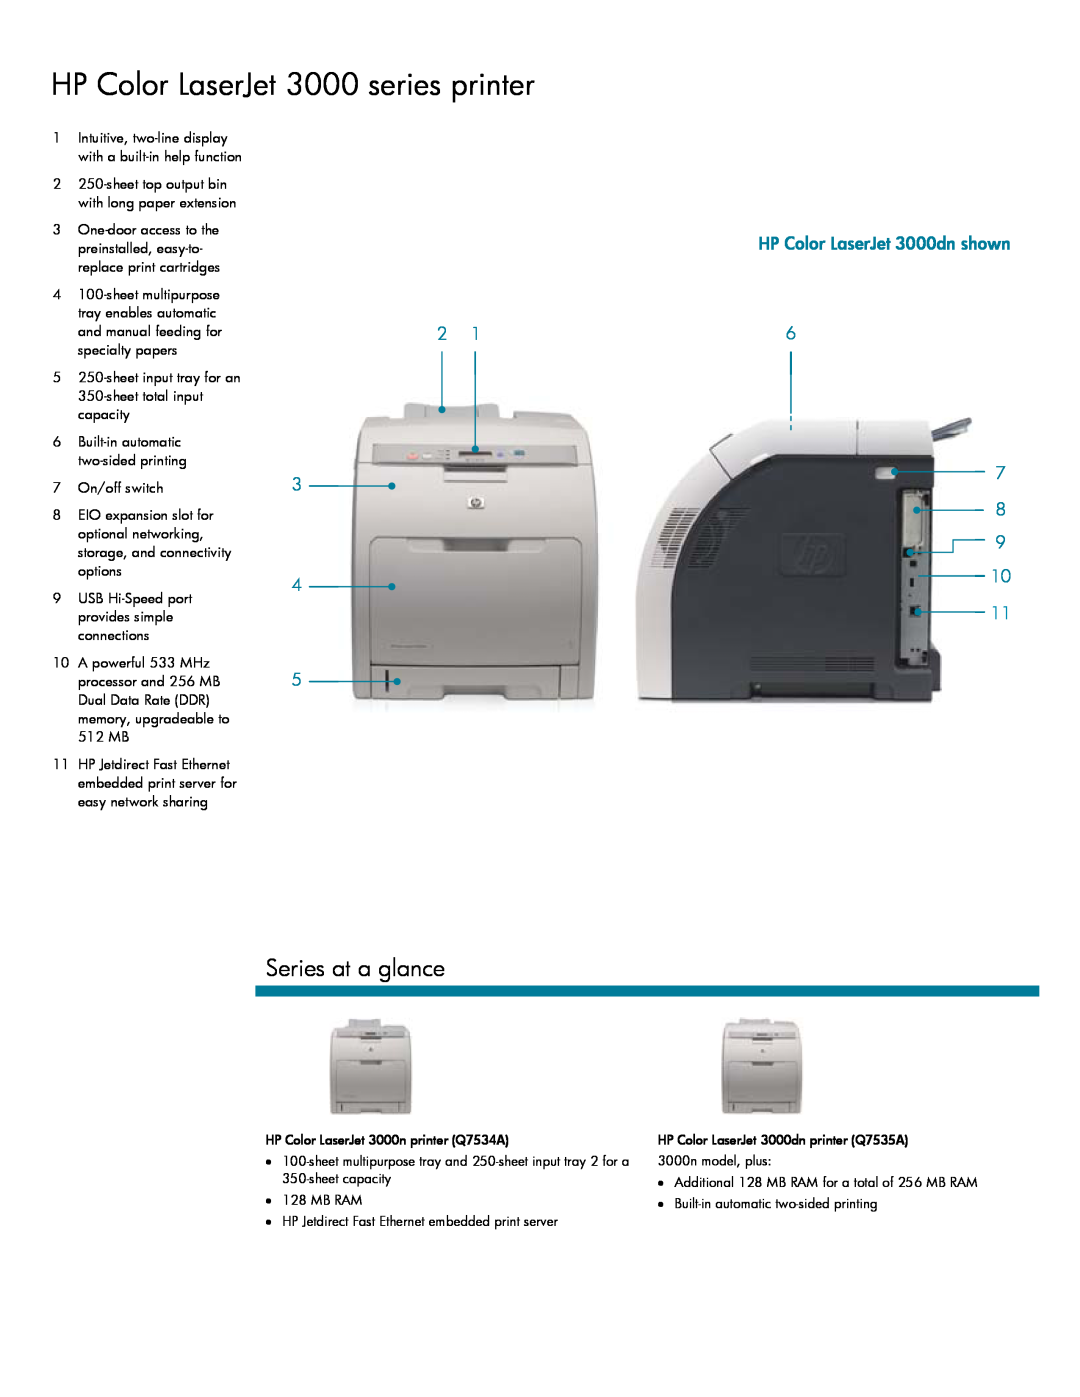 IBM manual HP Color LaserJet 3000 series printer, Series at a glance, HP Color LaserJet 3000dn shown 